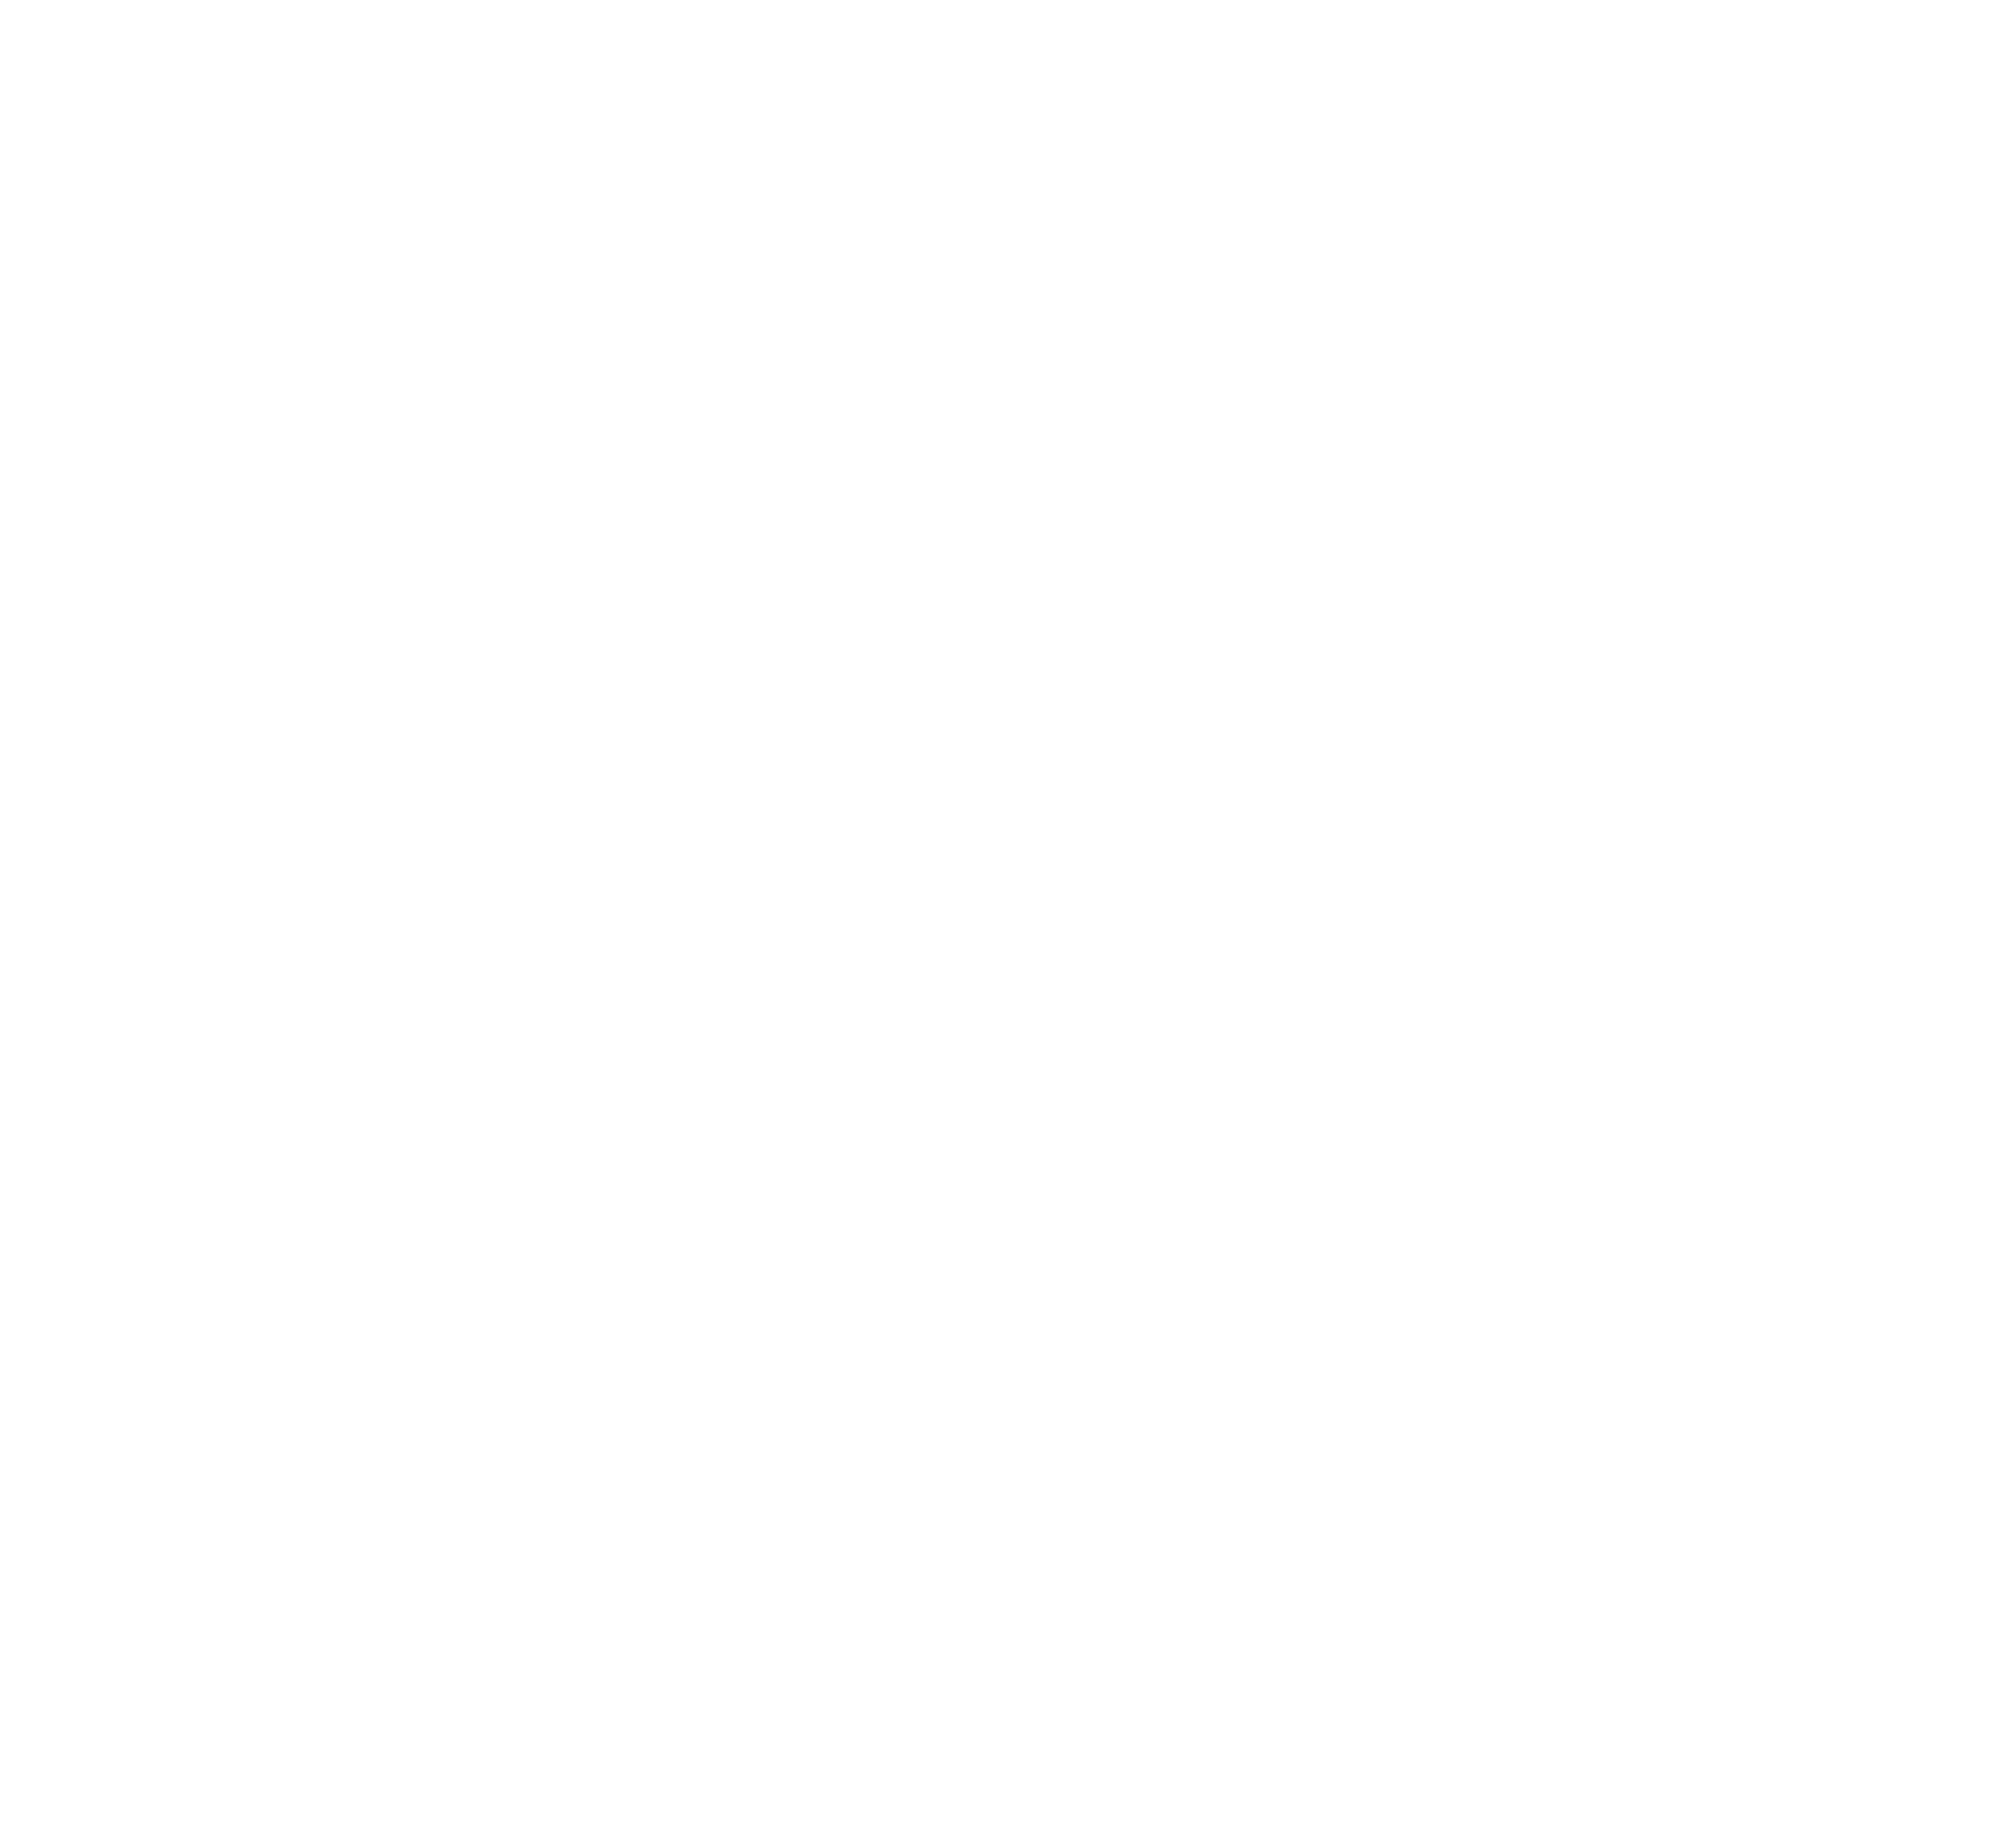 Tierklinik Breitensee logo